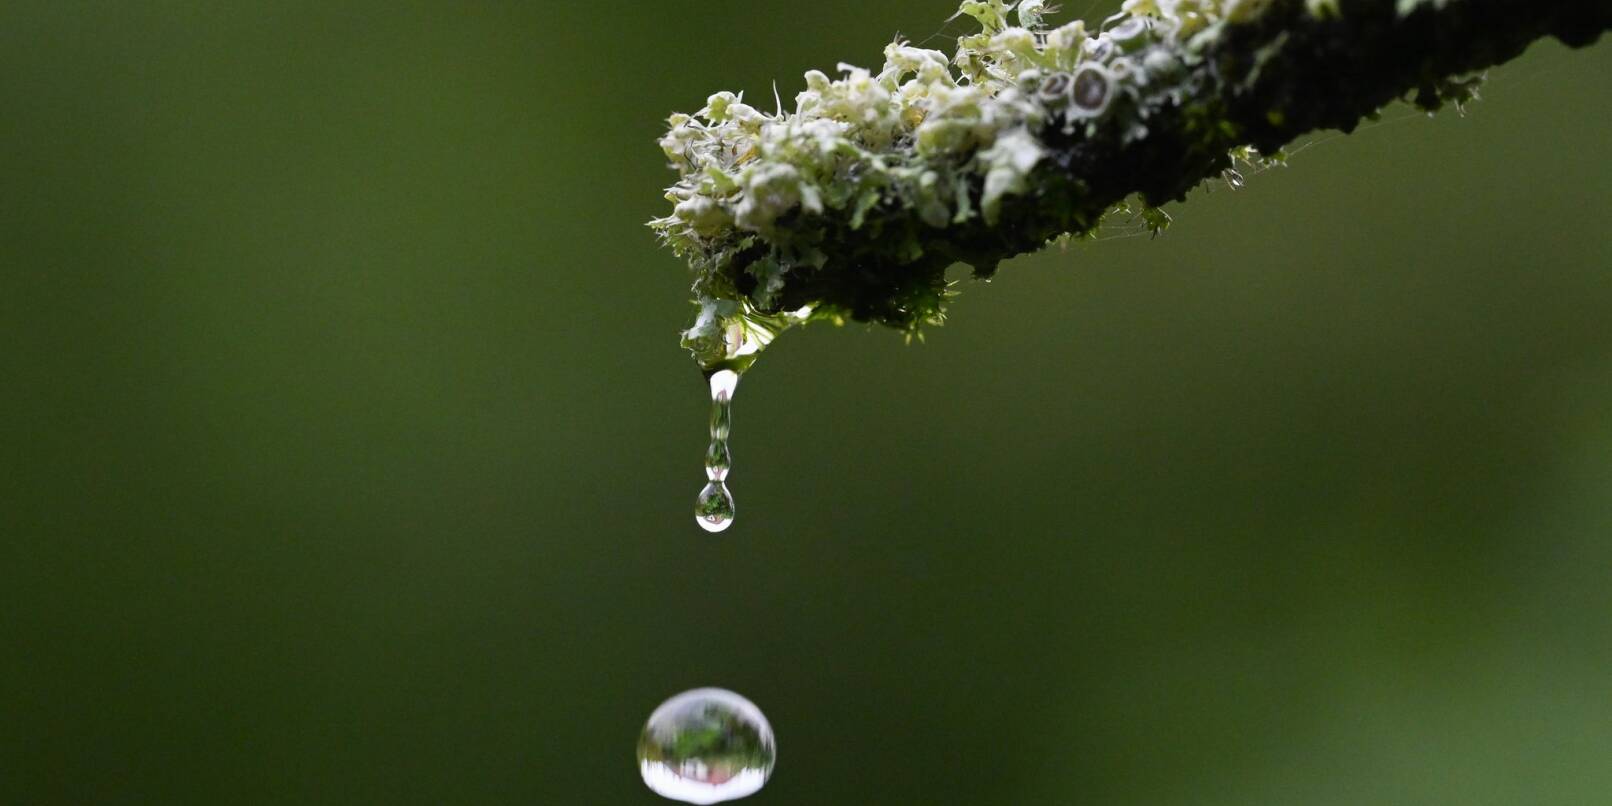 Ein Regentropfen fällt von einer Pflanze.